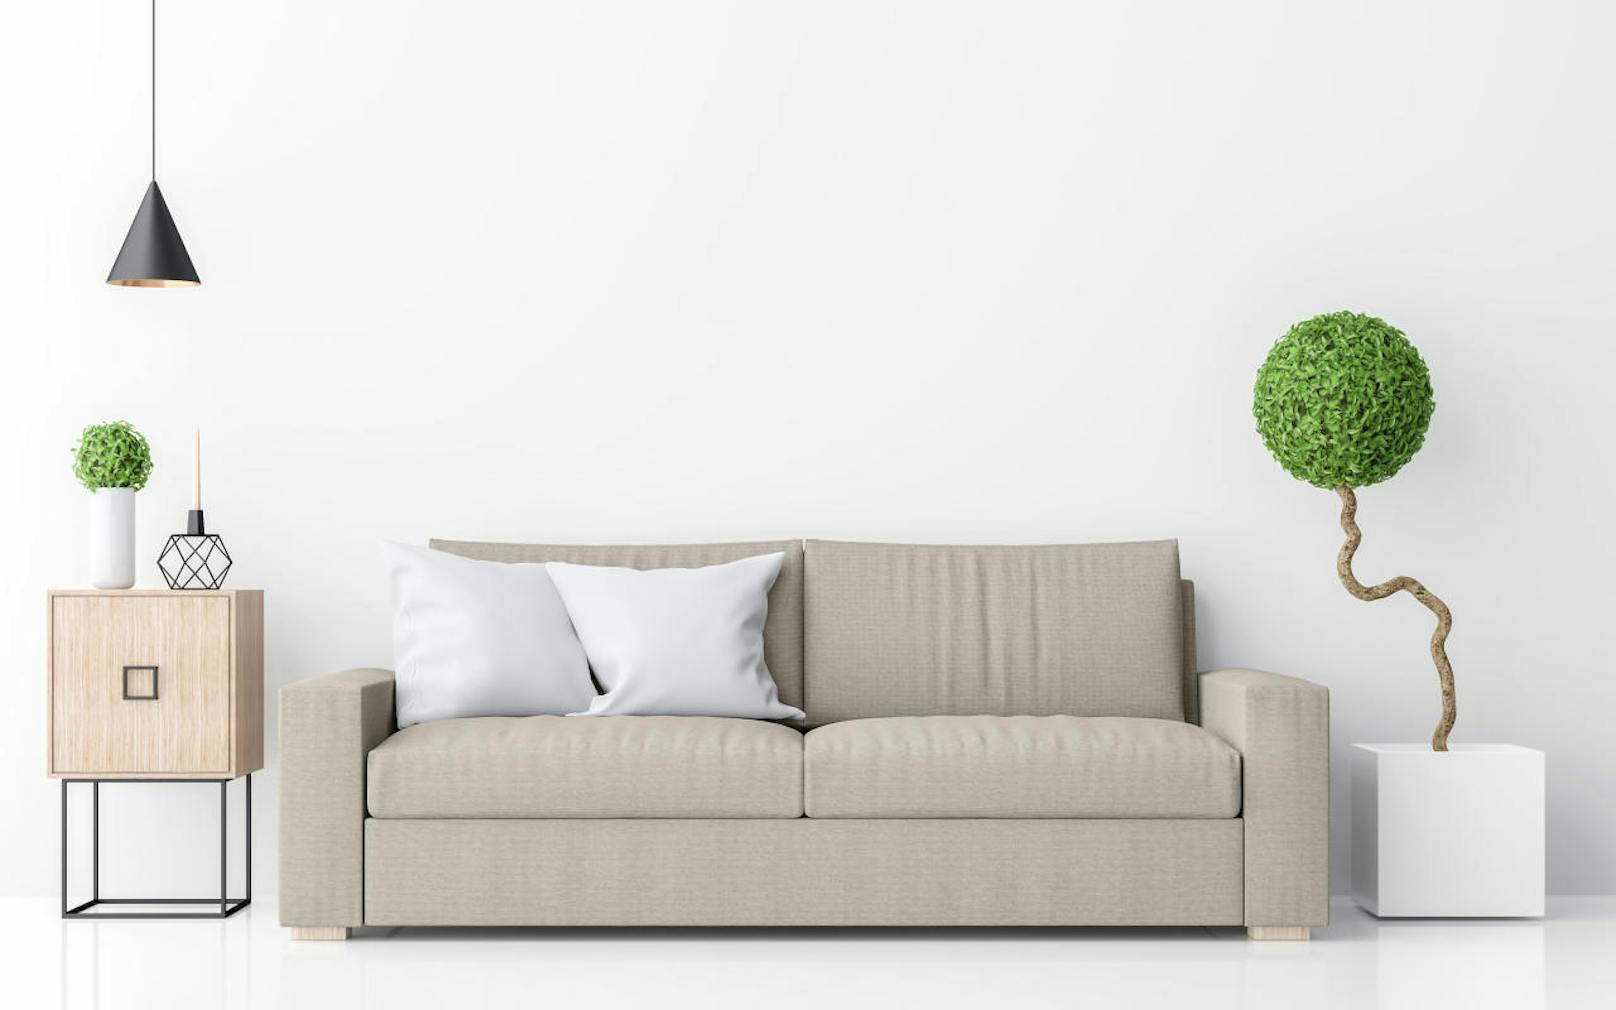 Das Sofa gehört an die Wand, denn nur so kann man gemäss Feng-Shui Ruhe und Geborgenheit empfinden. Und: Pflanzen sind immer gut für die Energie, im Wohnzimmer dürfen es auch mal größere sein.